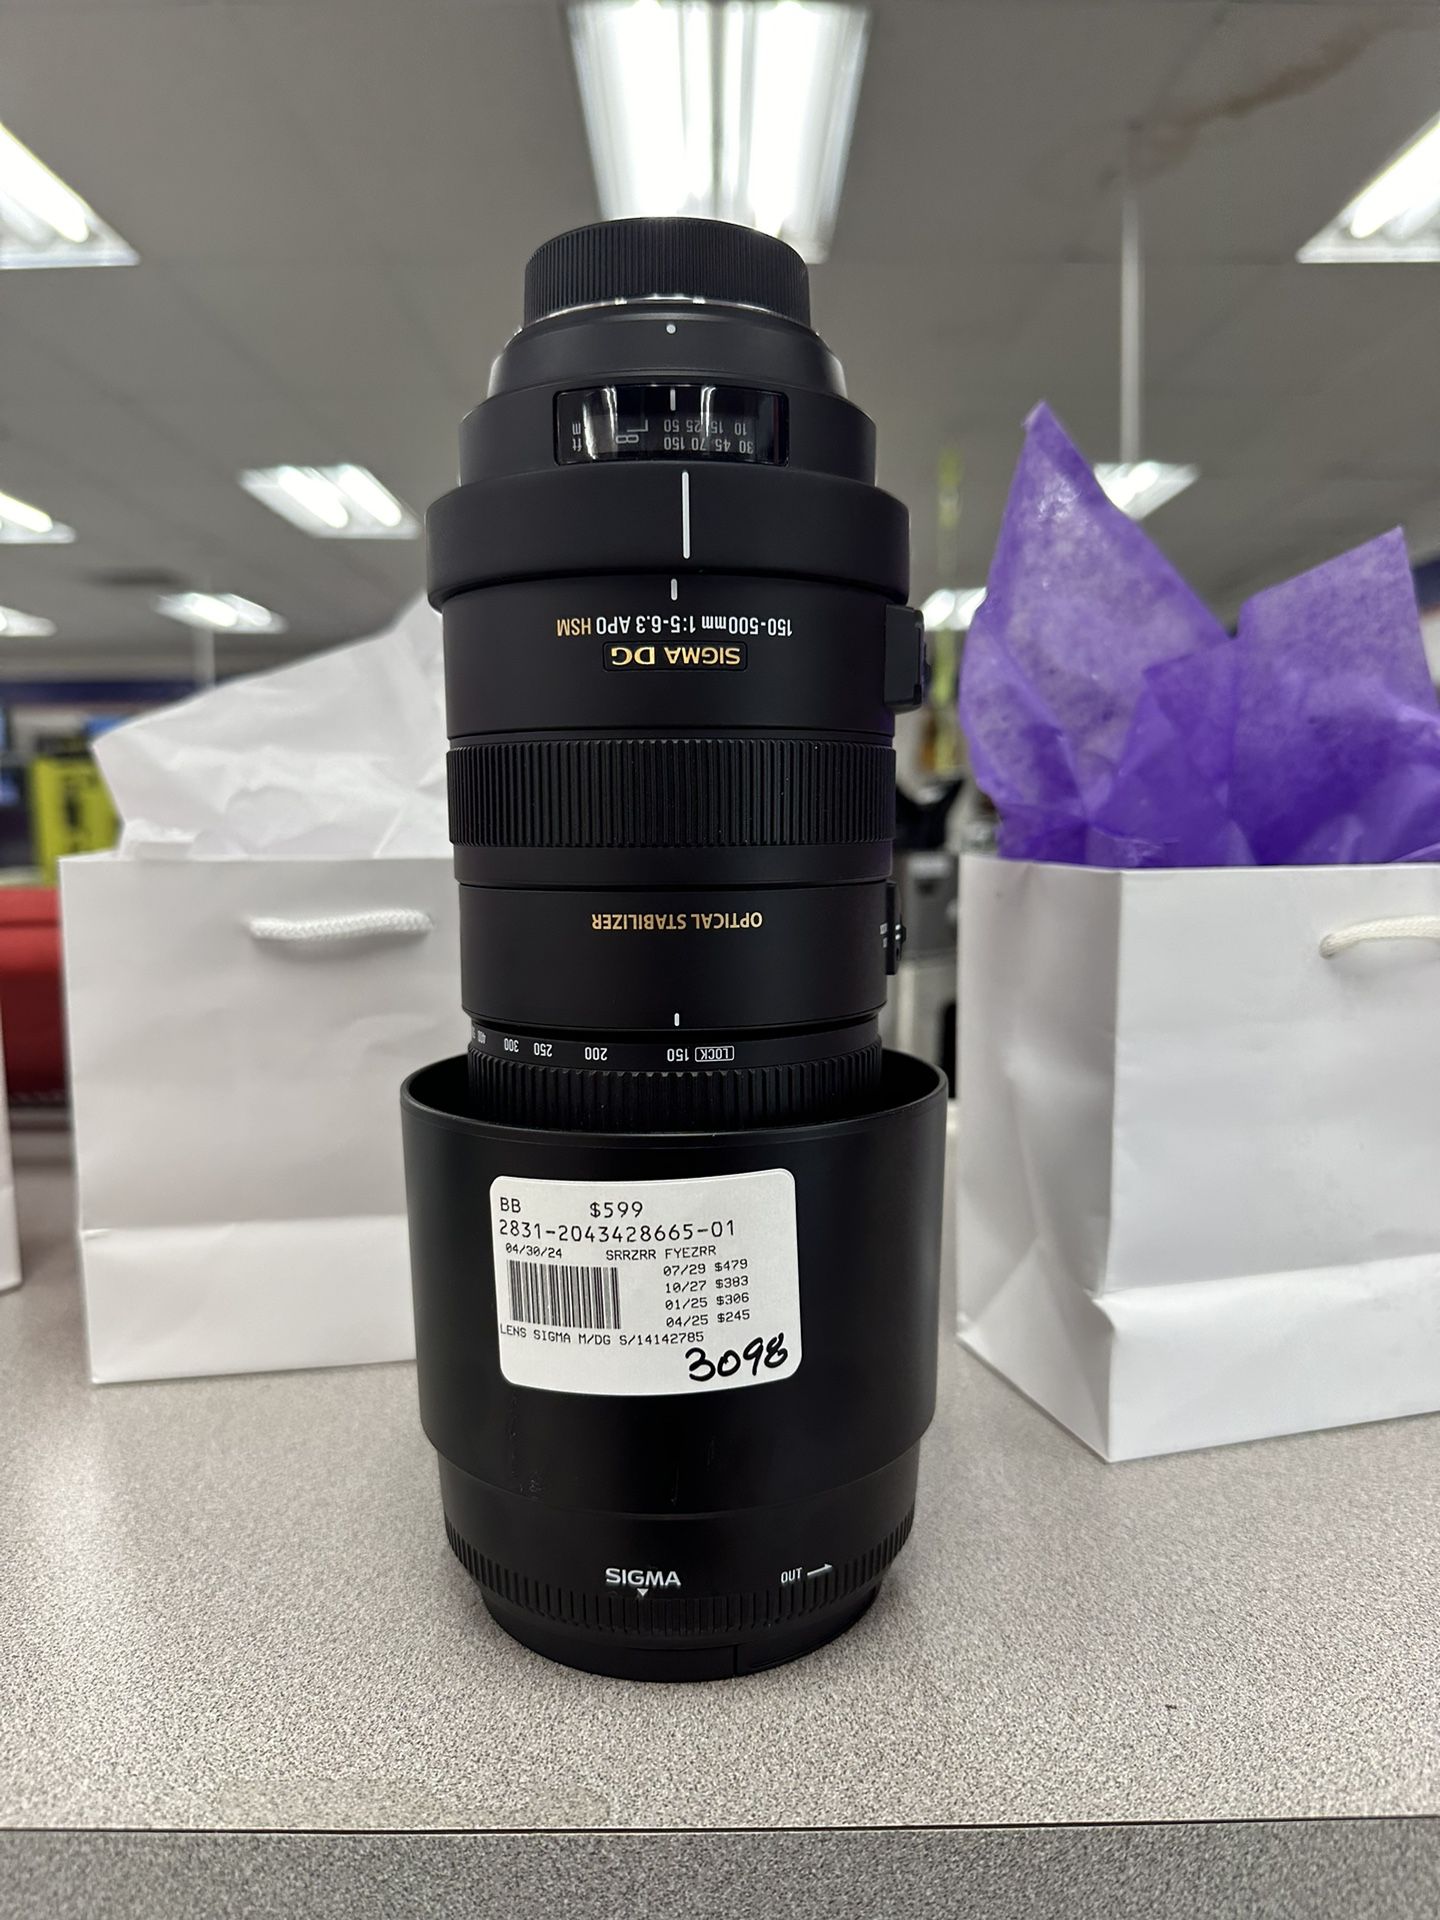 Sigma Camera Lens 